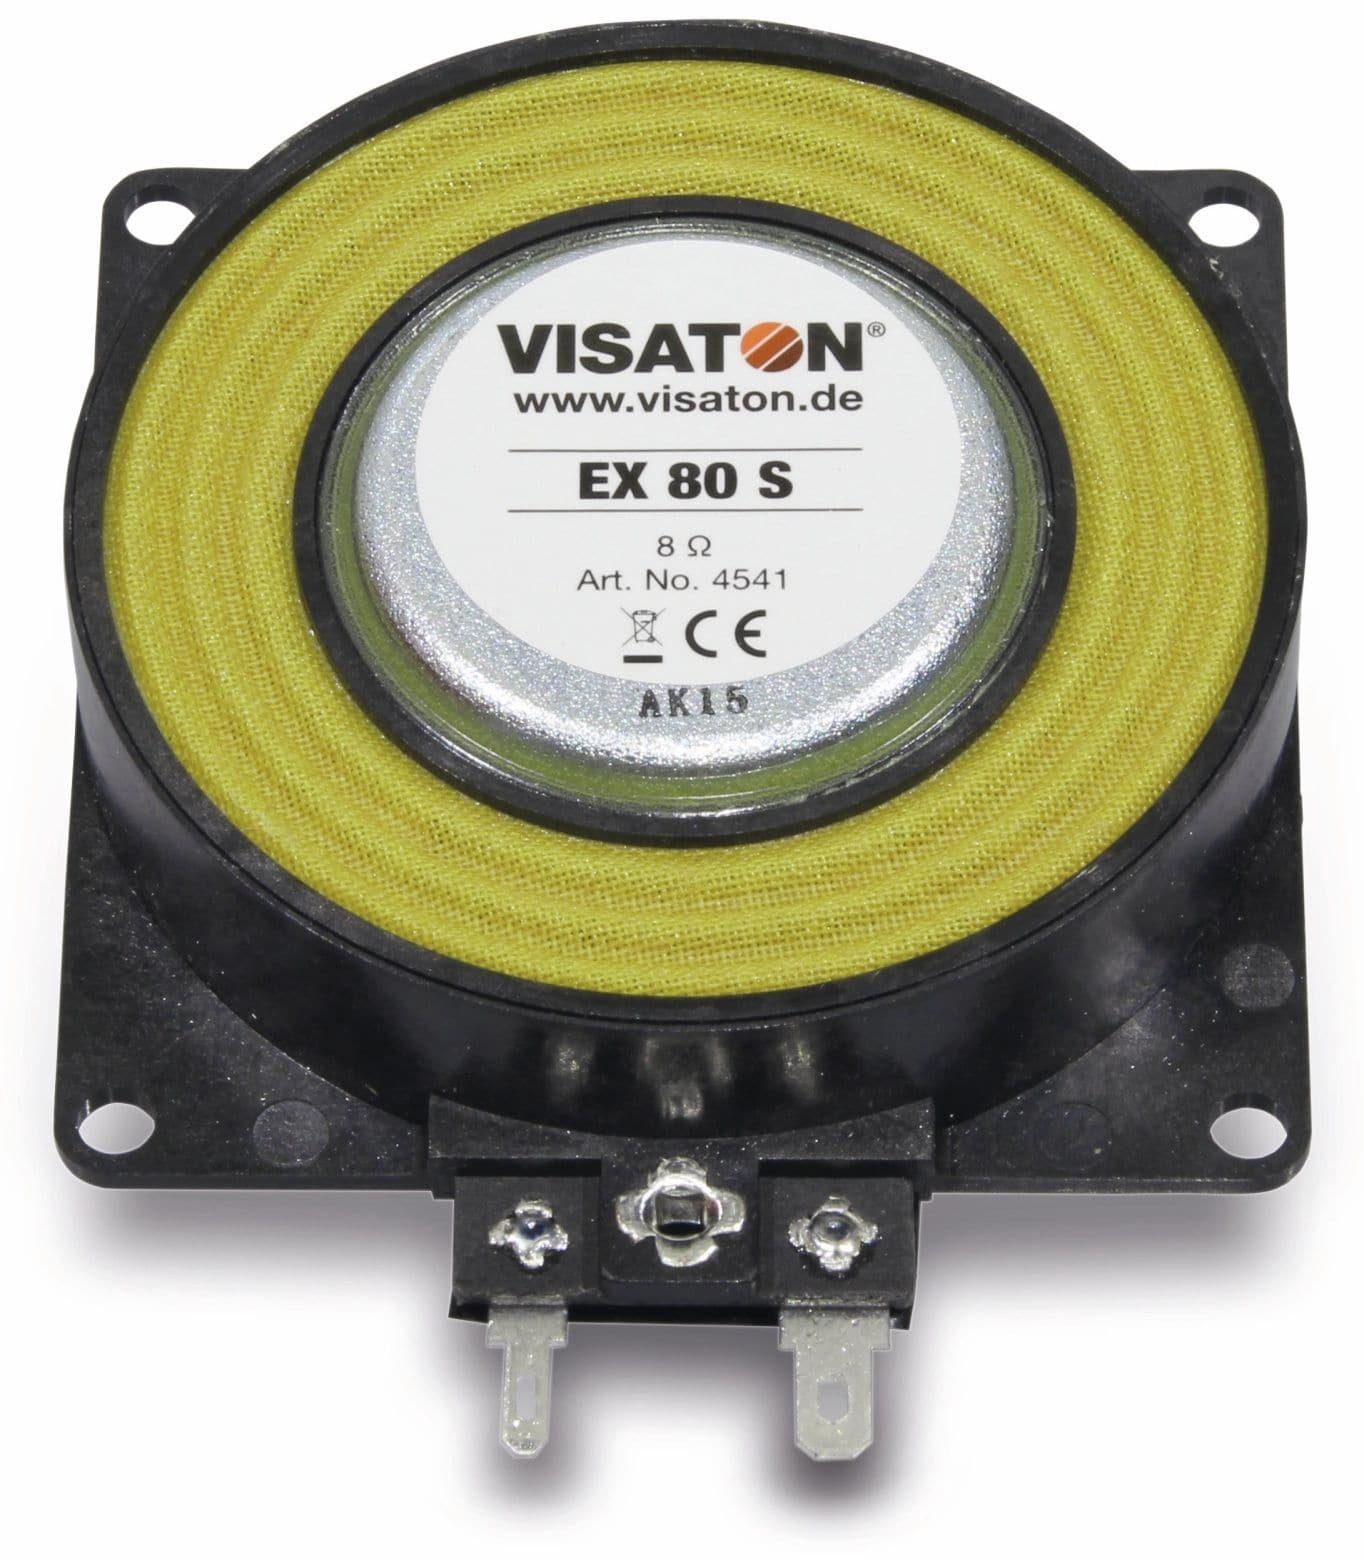 Visaton VISATON 8 EX S, Ohm Exciter 80 Lautsprecher